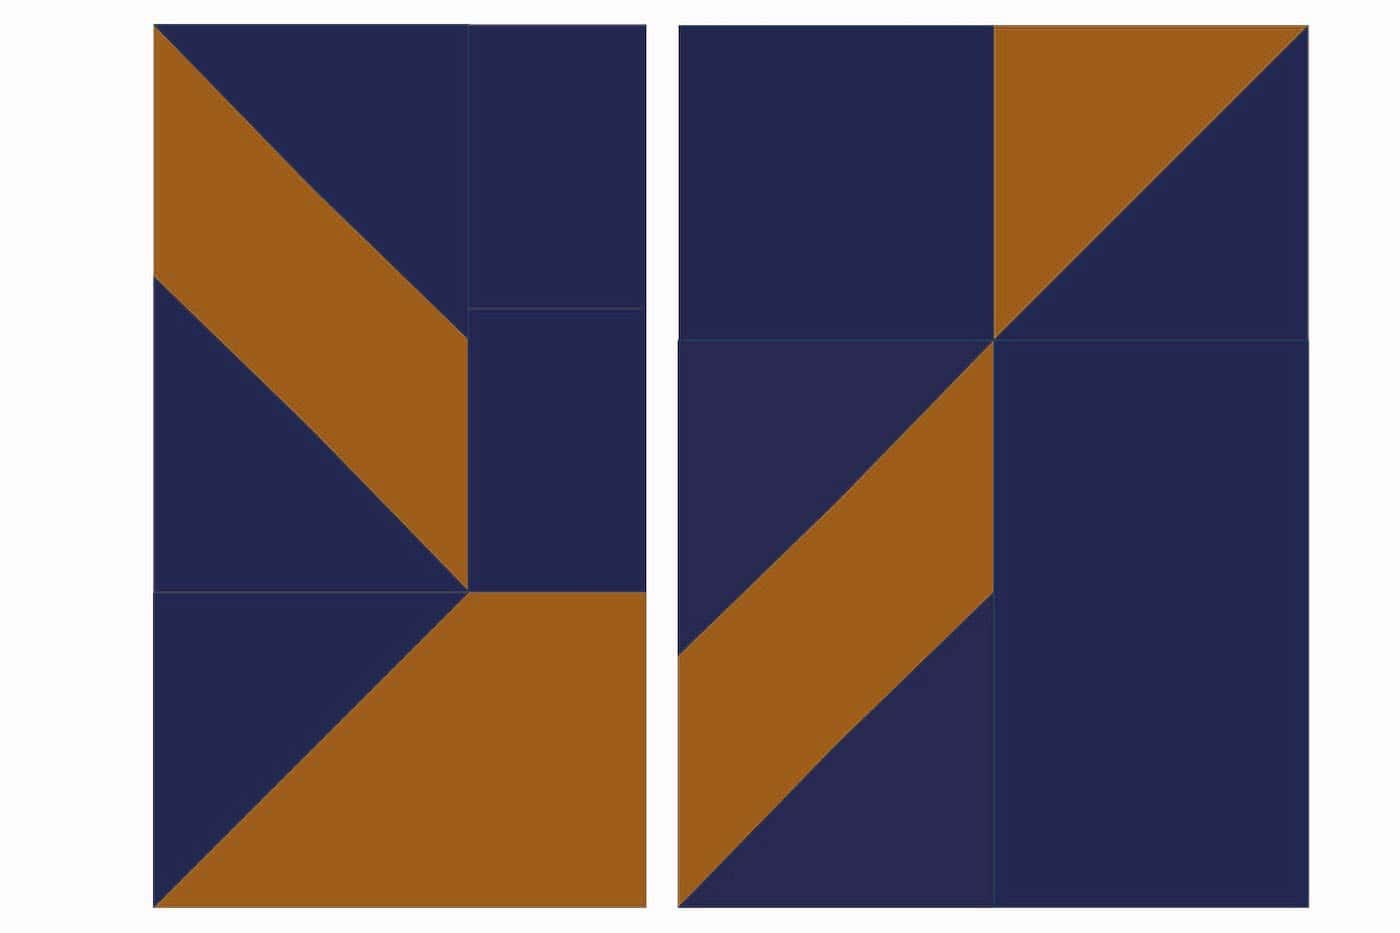 étape du schéma d'assemblage de la courtepointe, forme géométrique avec carrés et triangles bleu marine et cuivre